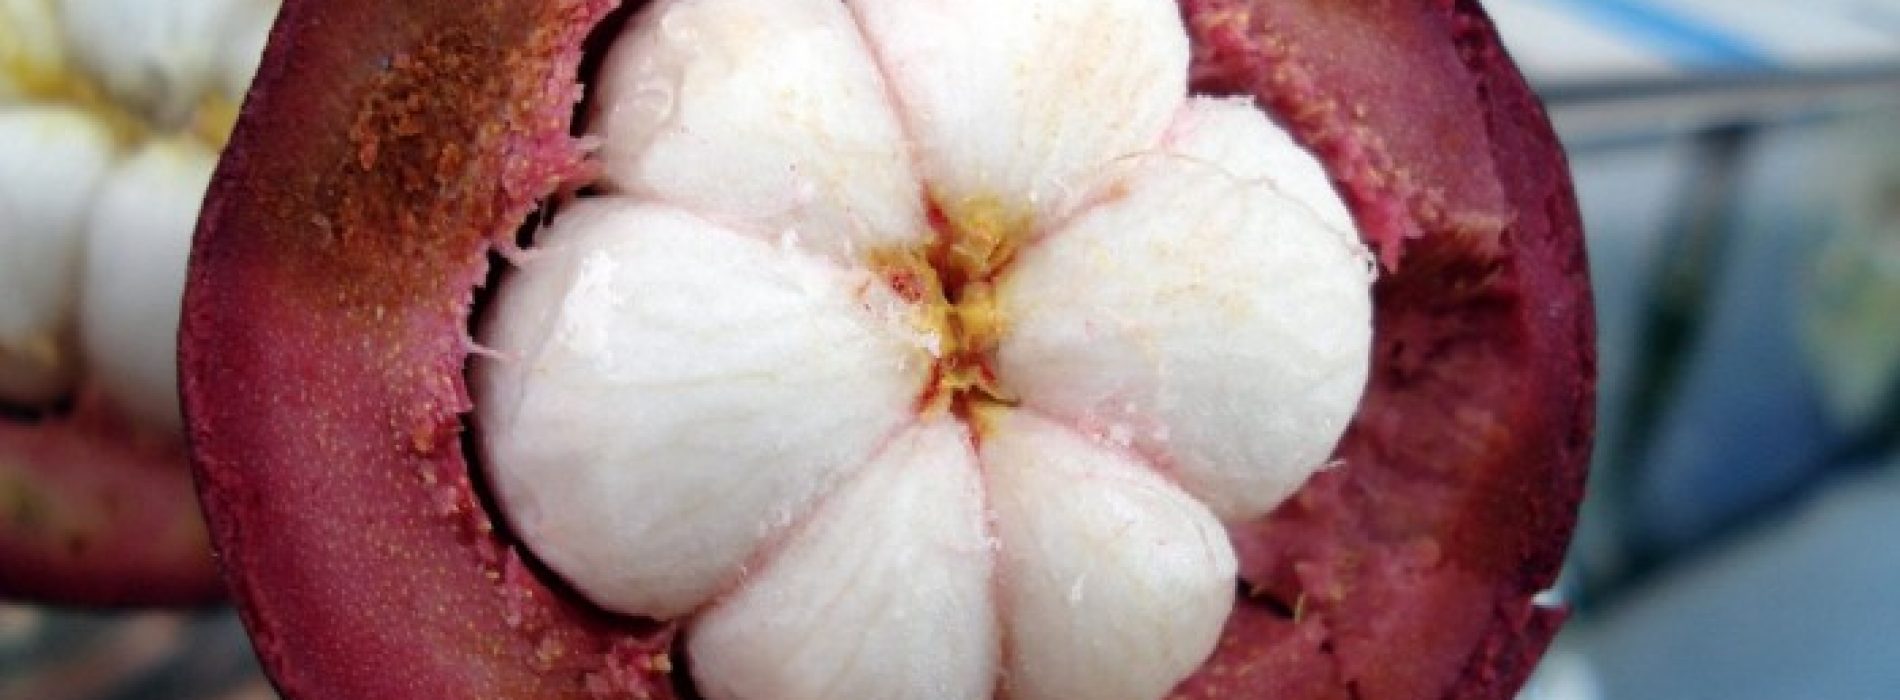 Deze tropische vrucht doodt borstkankercellen